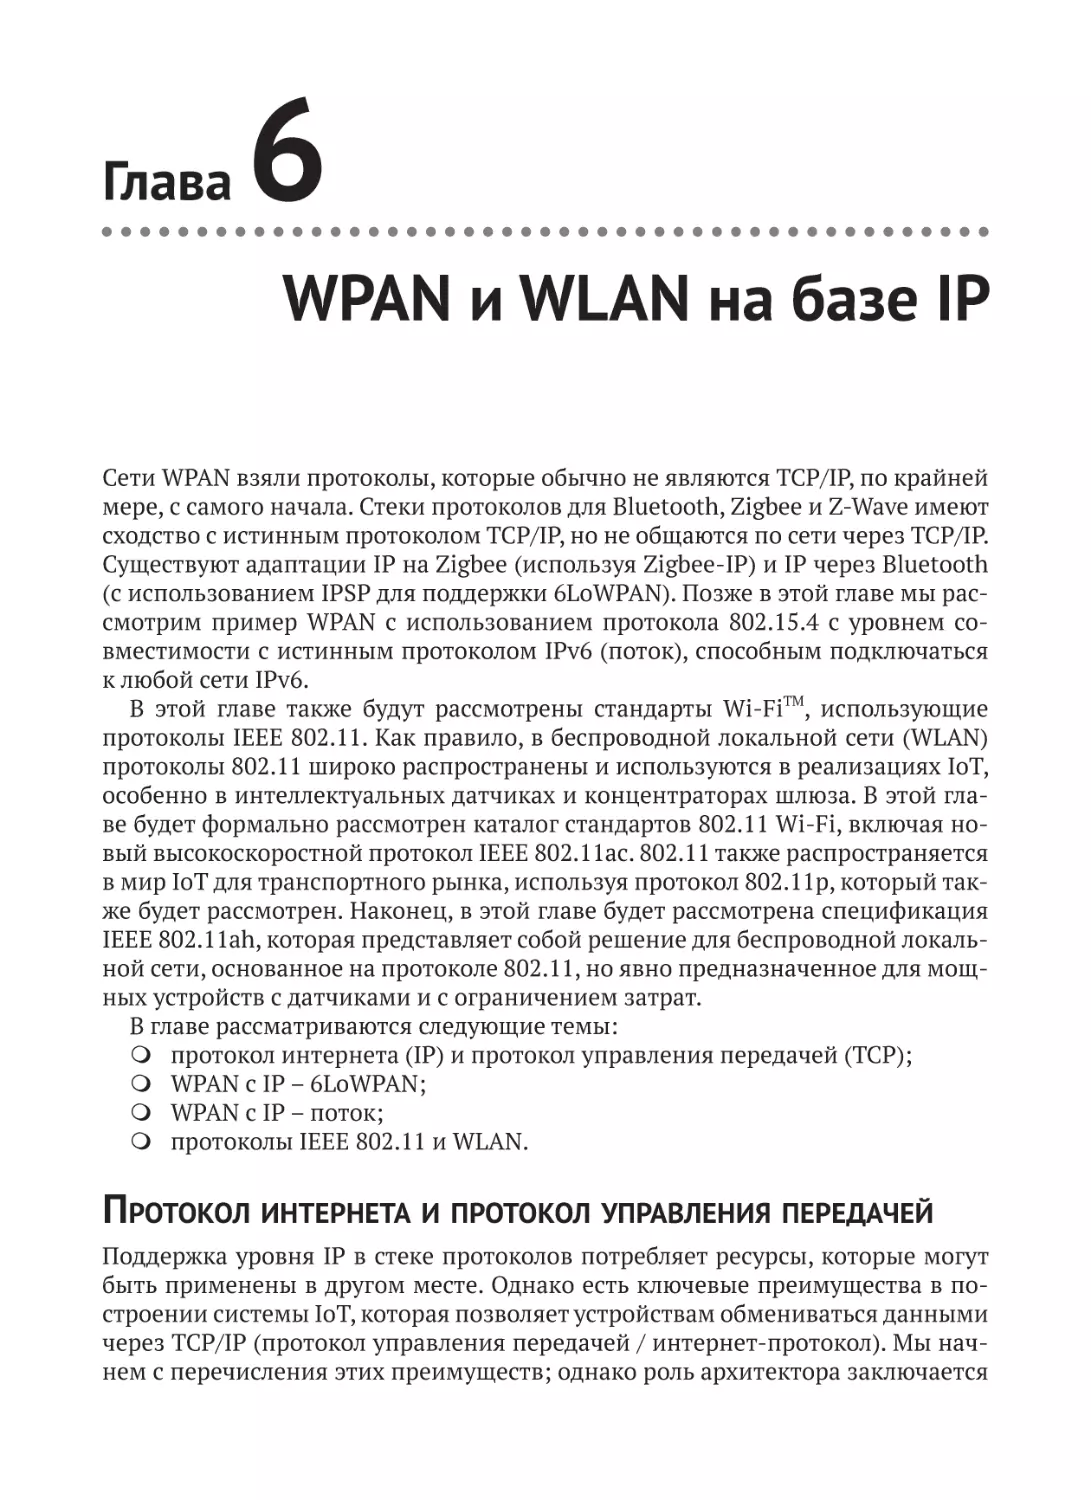 WPAN и WLAN на базе IP
Протокол интернета и протокол управления передачей